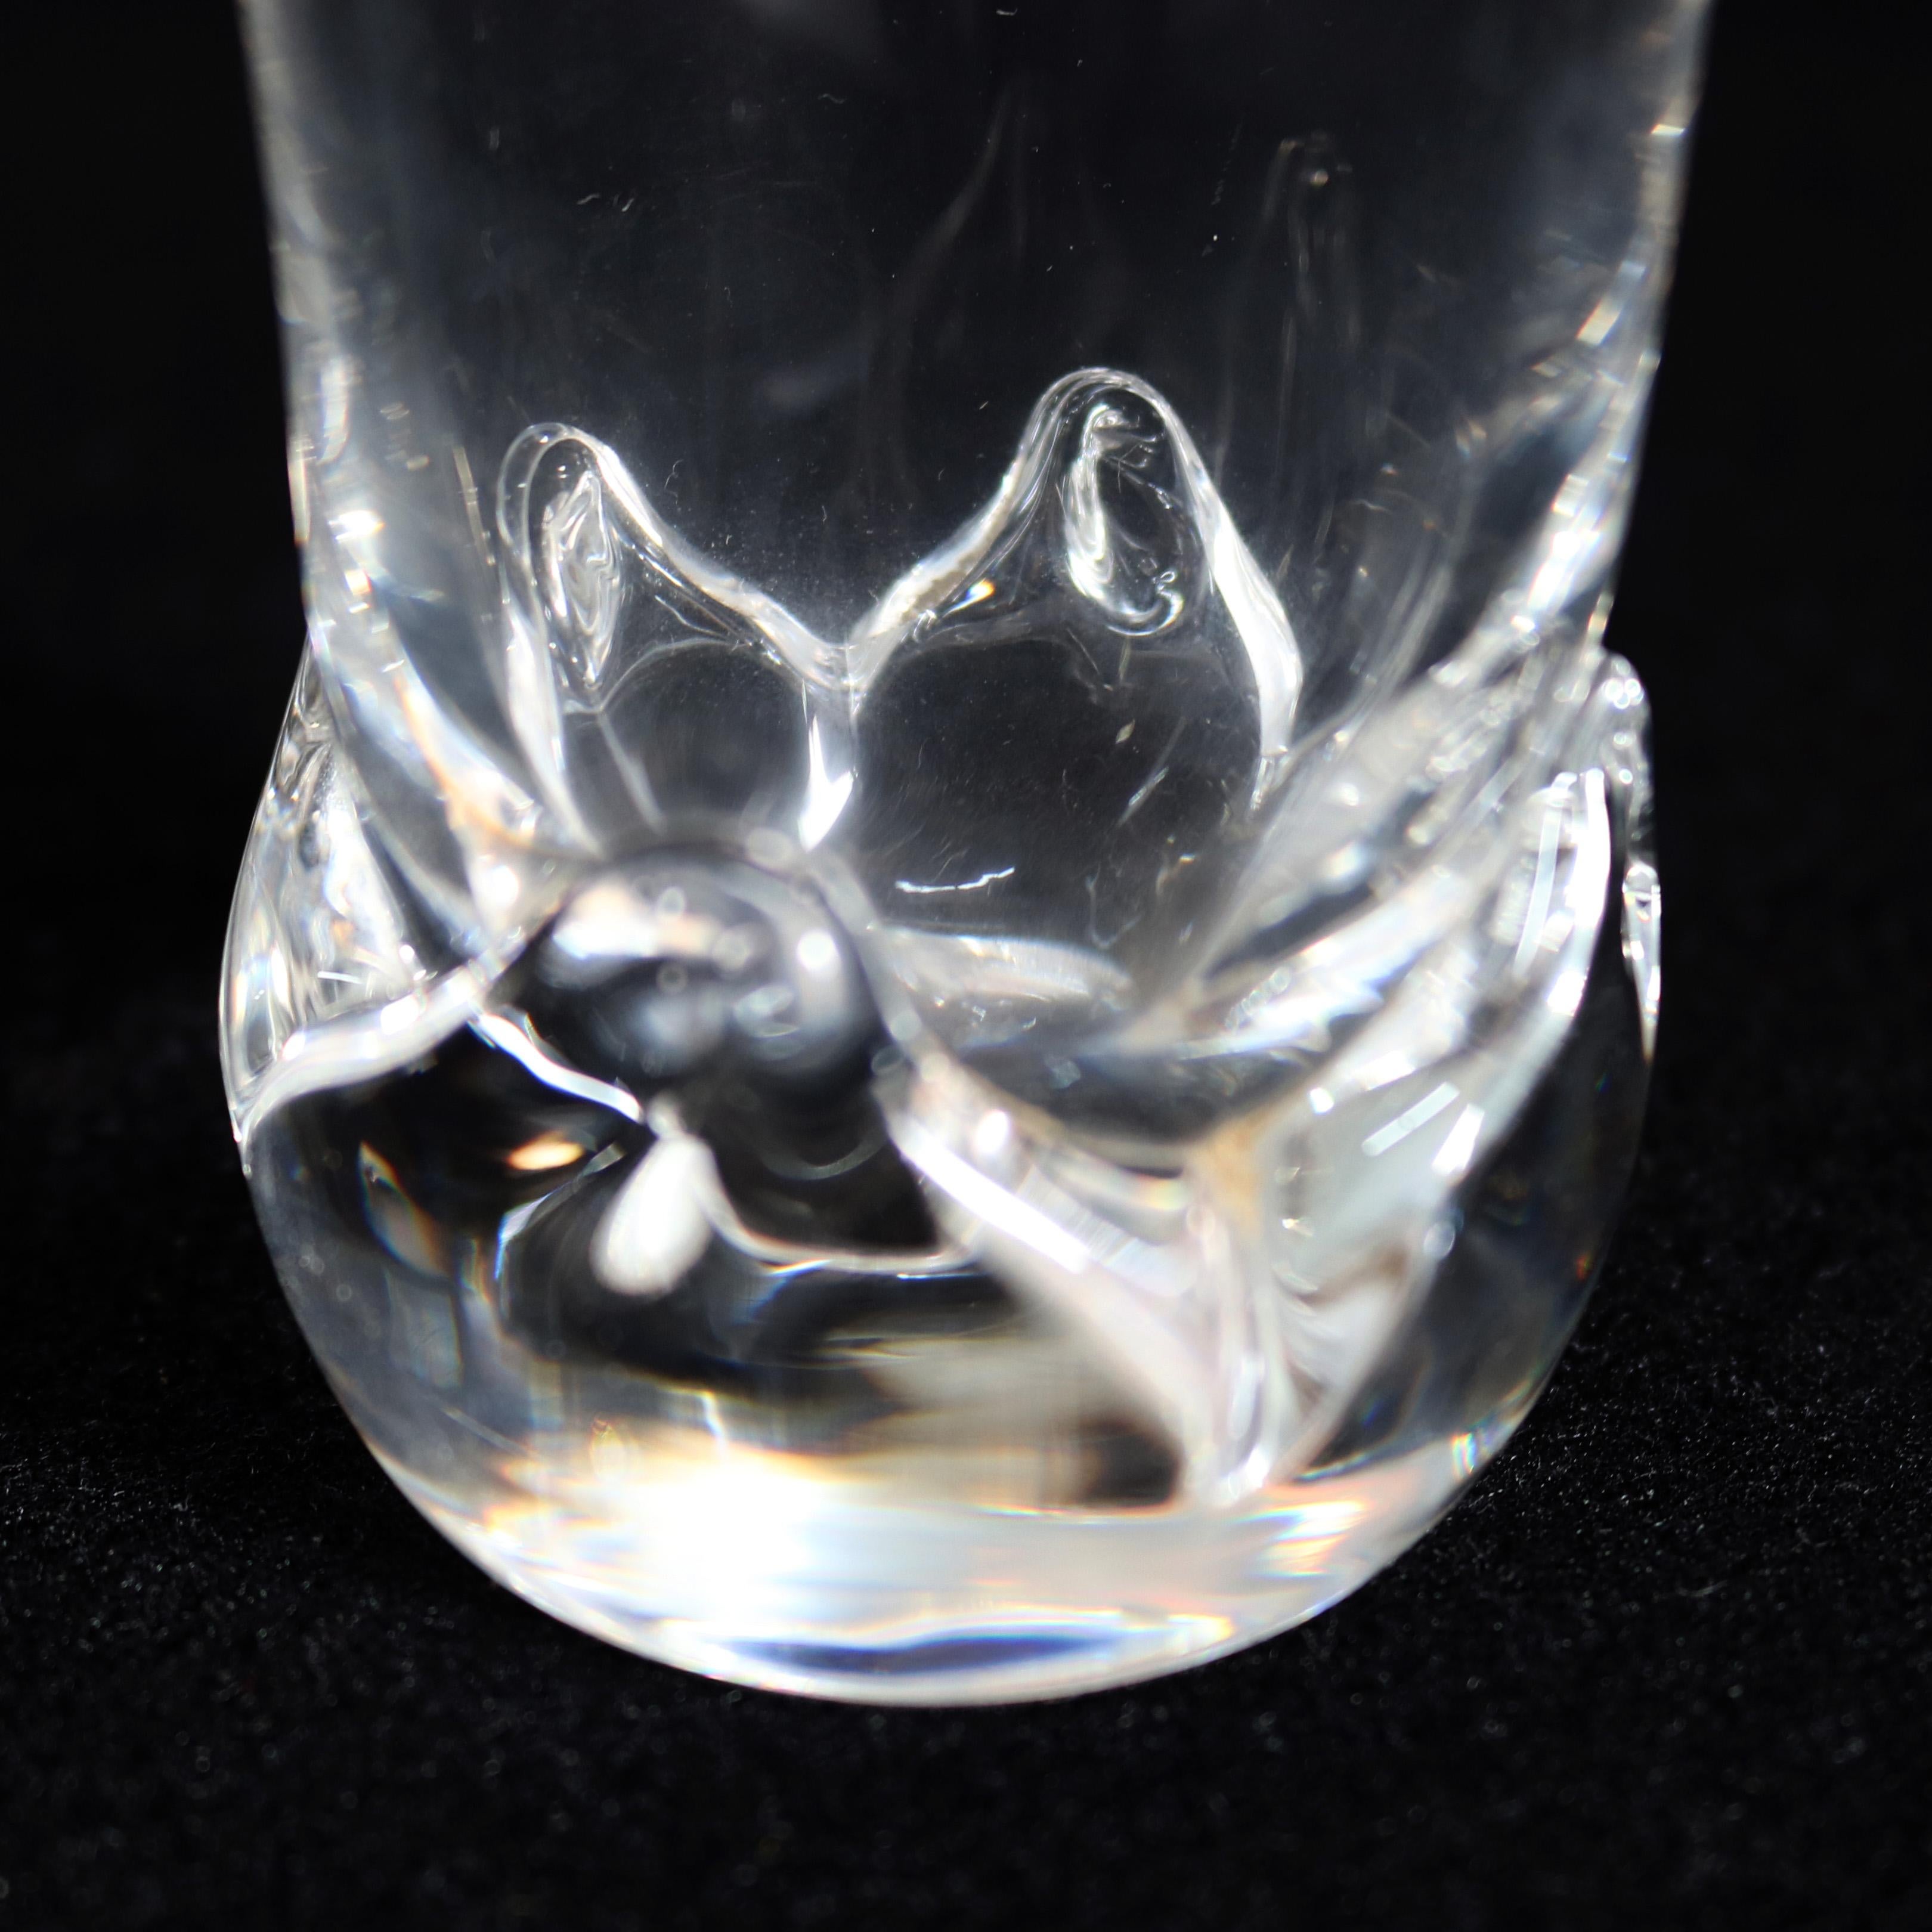 Mid-Century Modern Steuben Signed Art Glass Modernist Floral Form Bud Vase, Signed